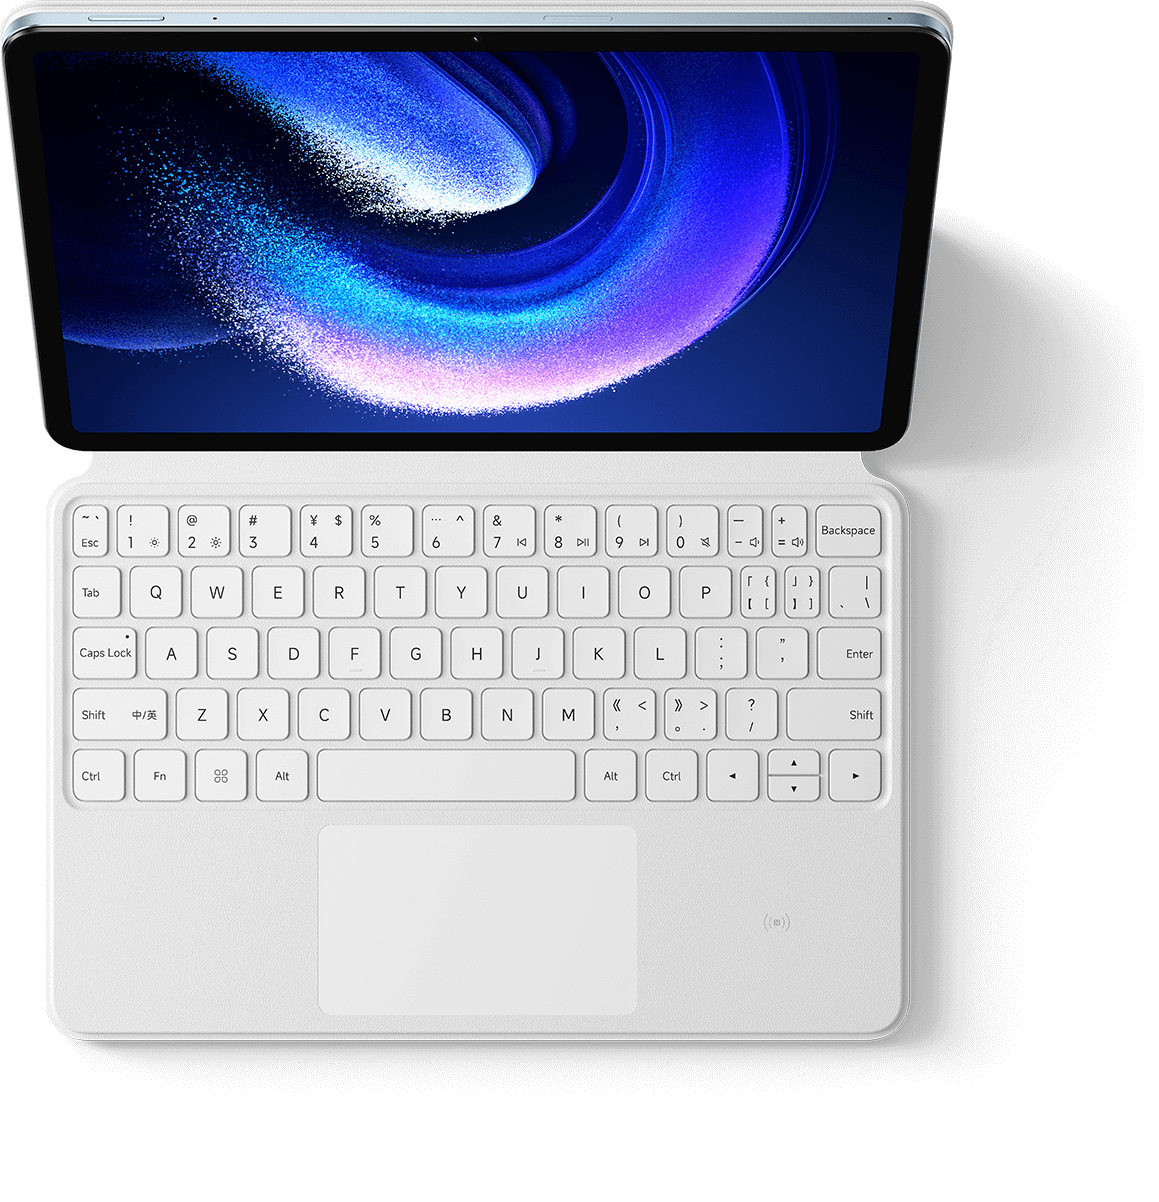 Exame Informática  Teste ao Xiaomi Pad 6: Um tablet altamente competente